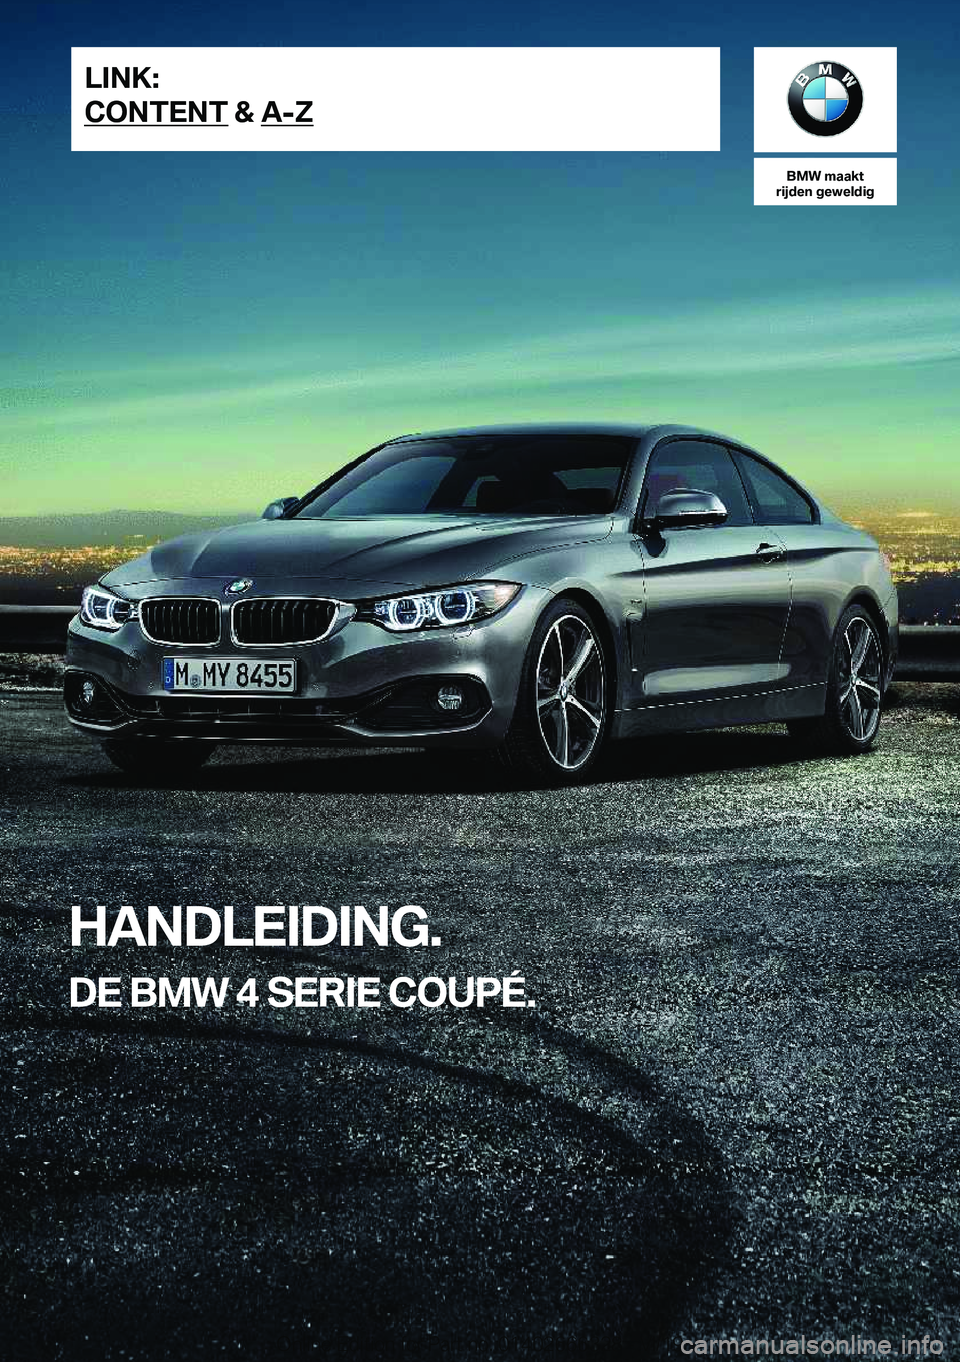 BMW 4 SERIES COUPE 2020  Instructieboekjes (in Dutch) �B�M�W��m�a�a�k�t
�r�i�j�d�e�n��g�e�w�e�l�d�i�g
�H�A�N�D�L�E�I�D�I�N�G�.
�D�E��B�M�W��4��S�E�R�I�E��C�O�U�P�